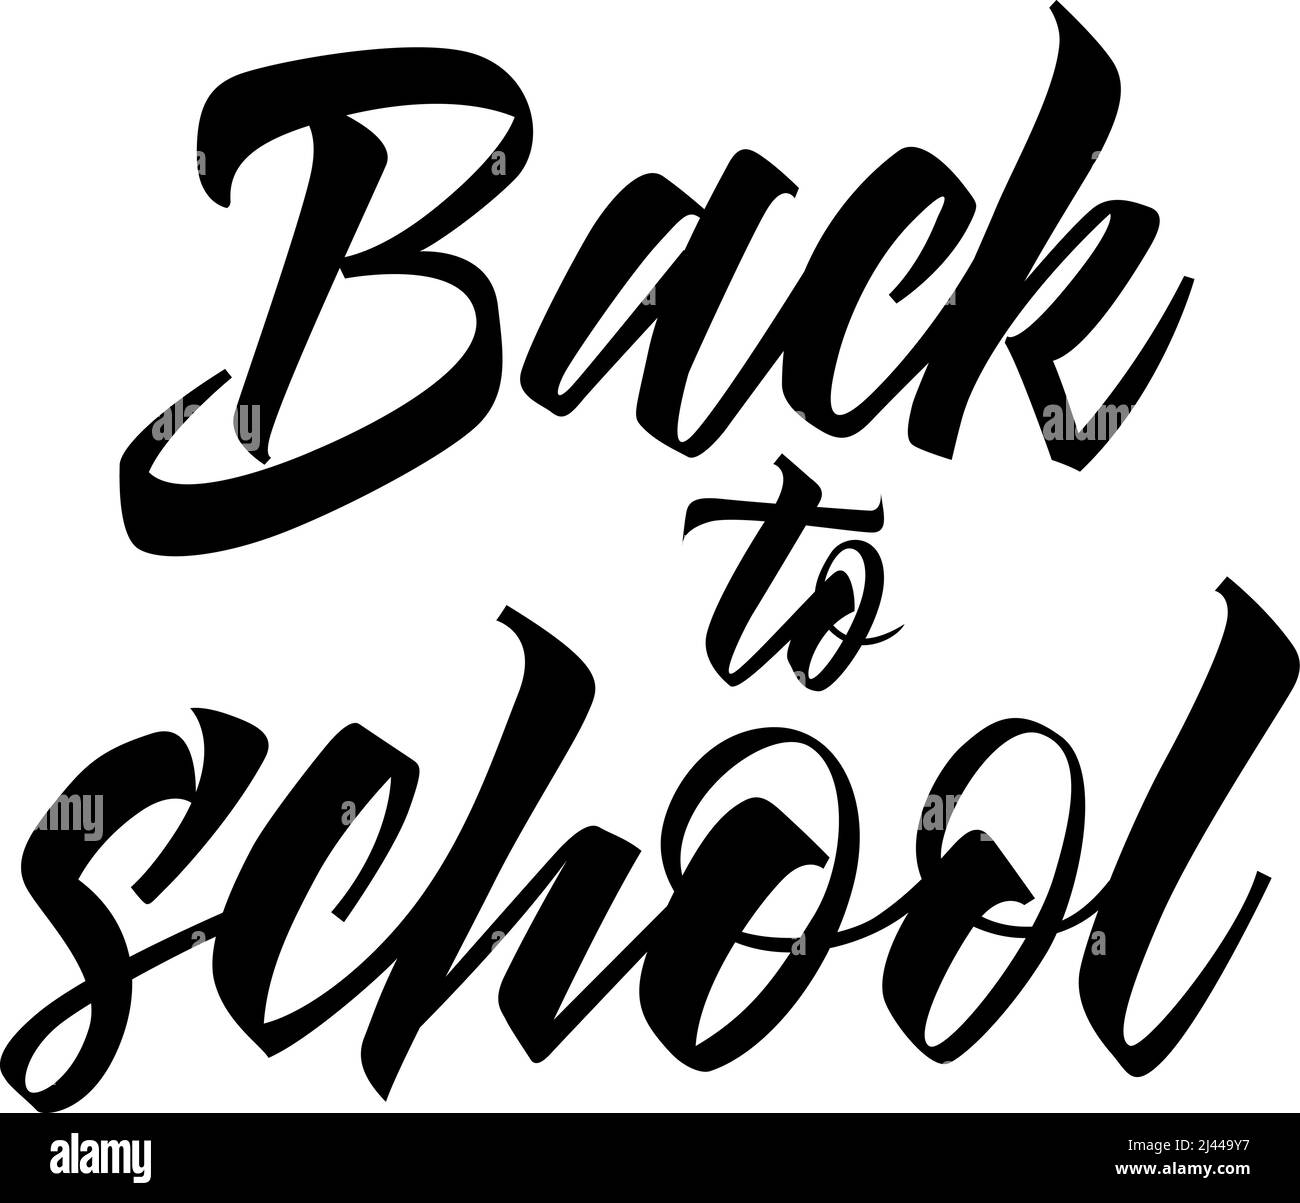 Zurück zur Schule Schriftzug in schwarzer Farbe. Kreative Beschriftung in Fettdruck. Handgeschriebener Text, Kalligraphie. Kann für Grußkarten, Poster, Flyer verwendet werden Stock Vektor